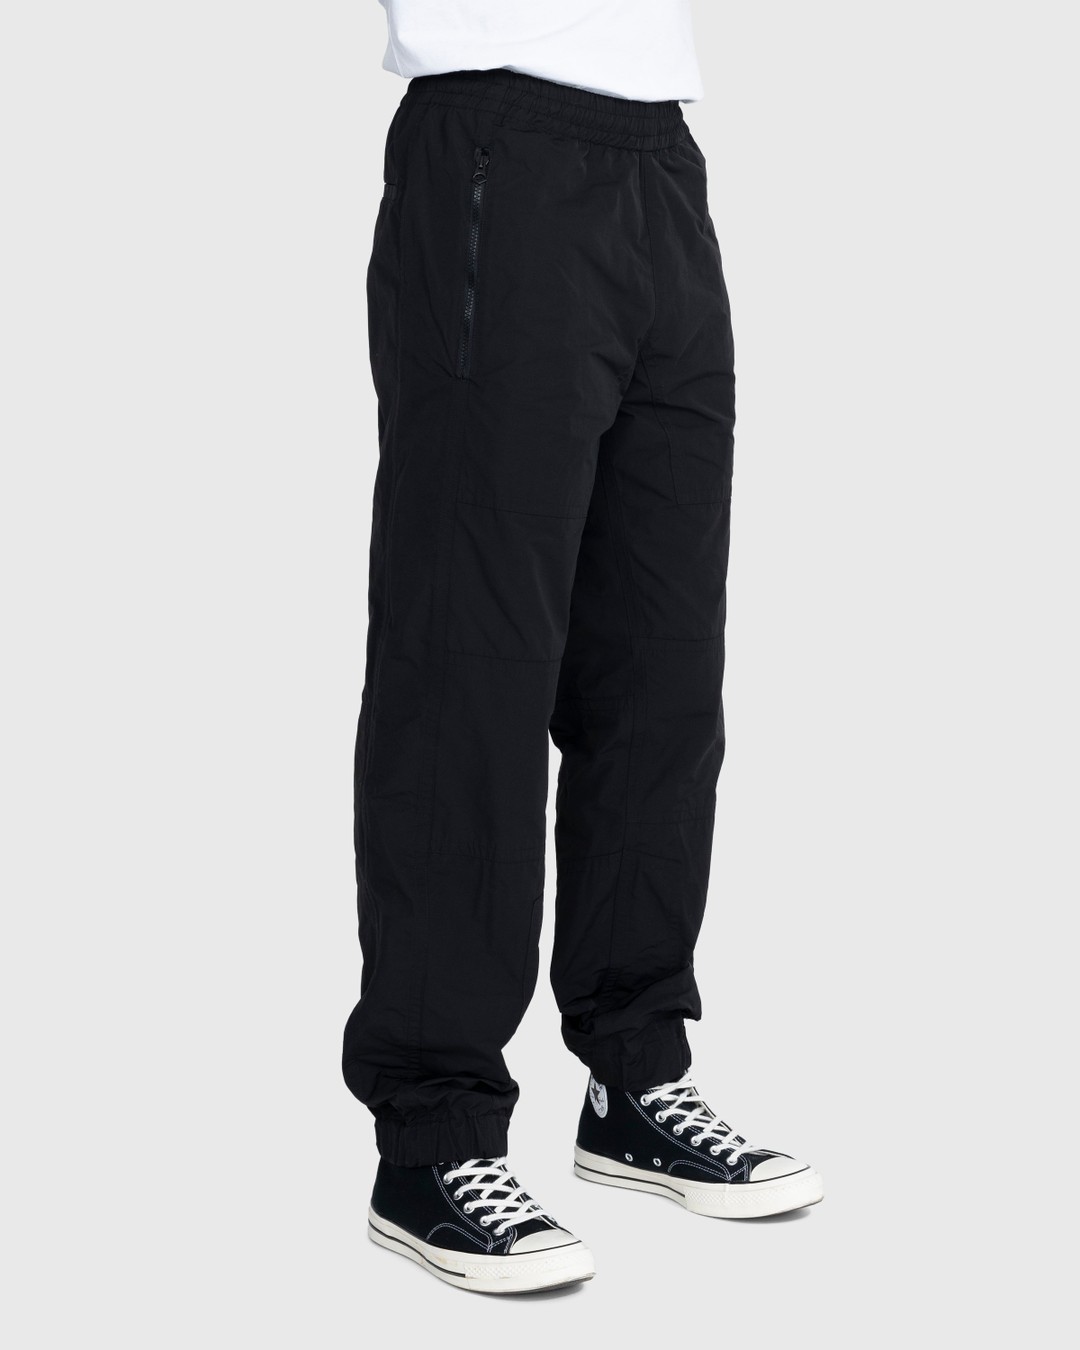 Dries van Noten – Peatt Pants - Active Pants - Black - Image 3